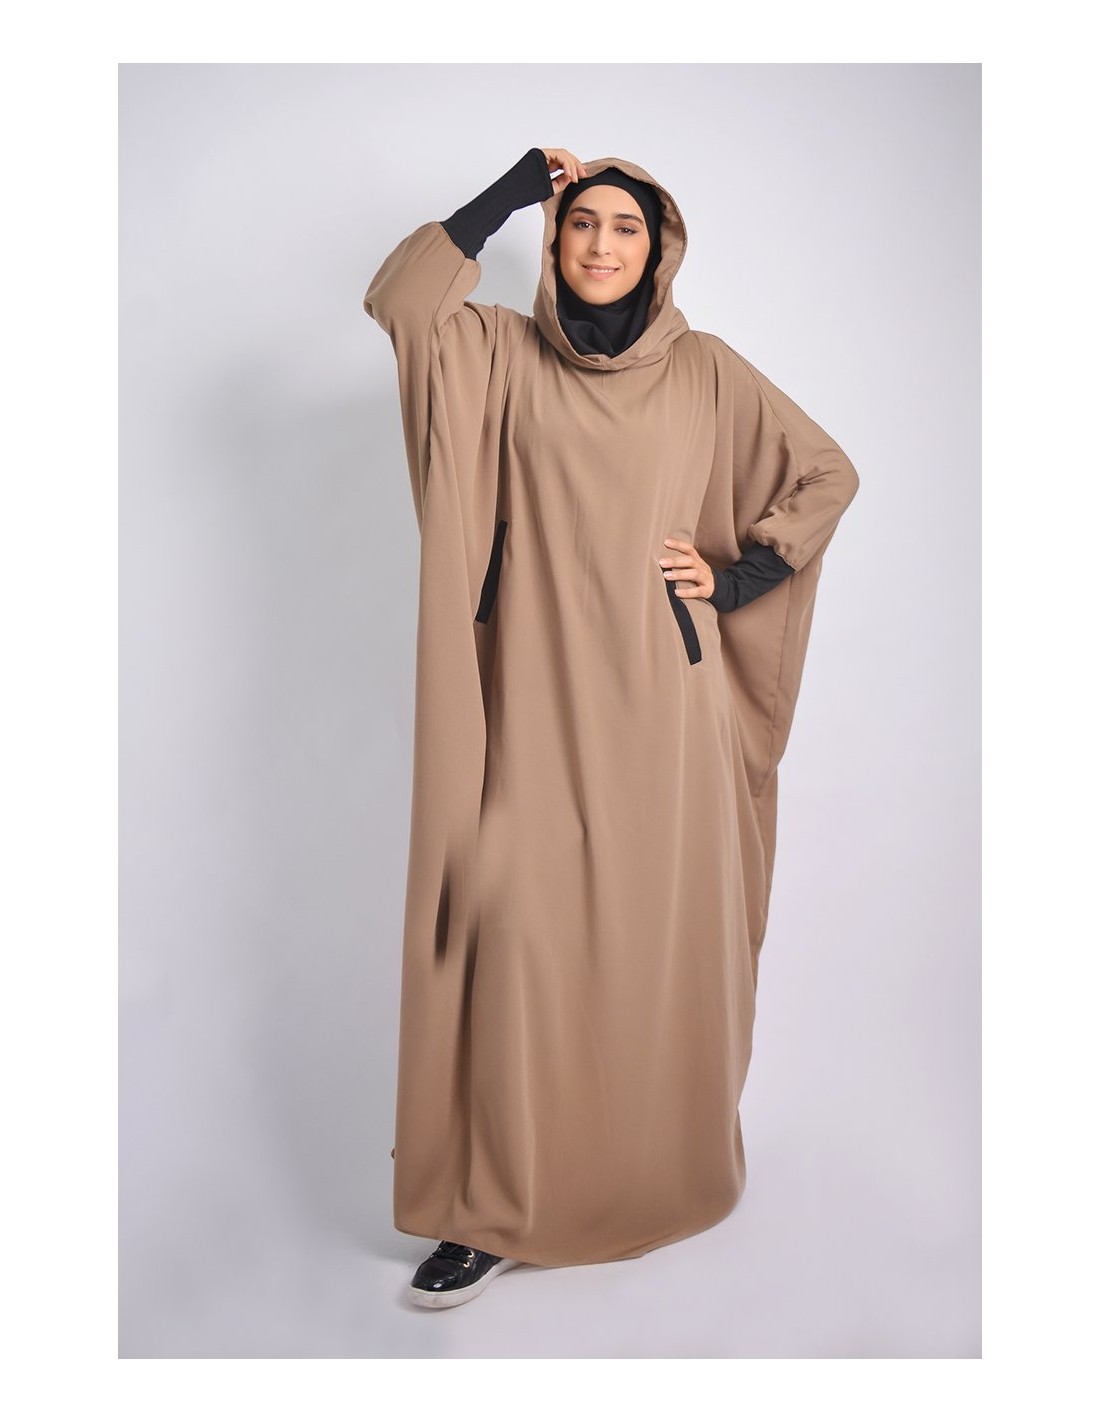 Abaya Young integrated hijab and Hood